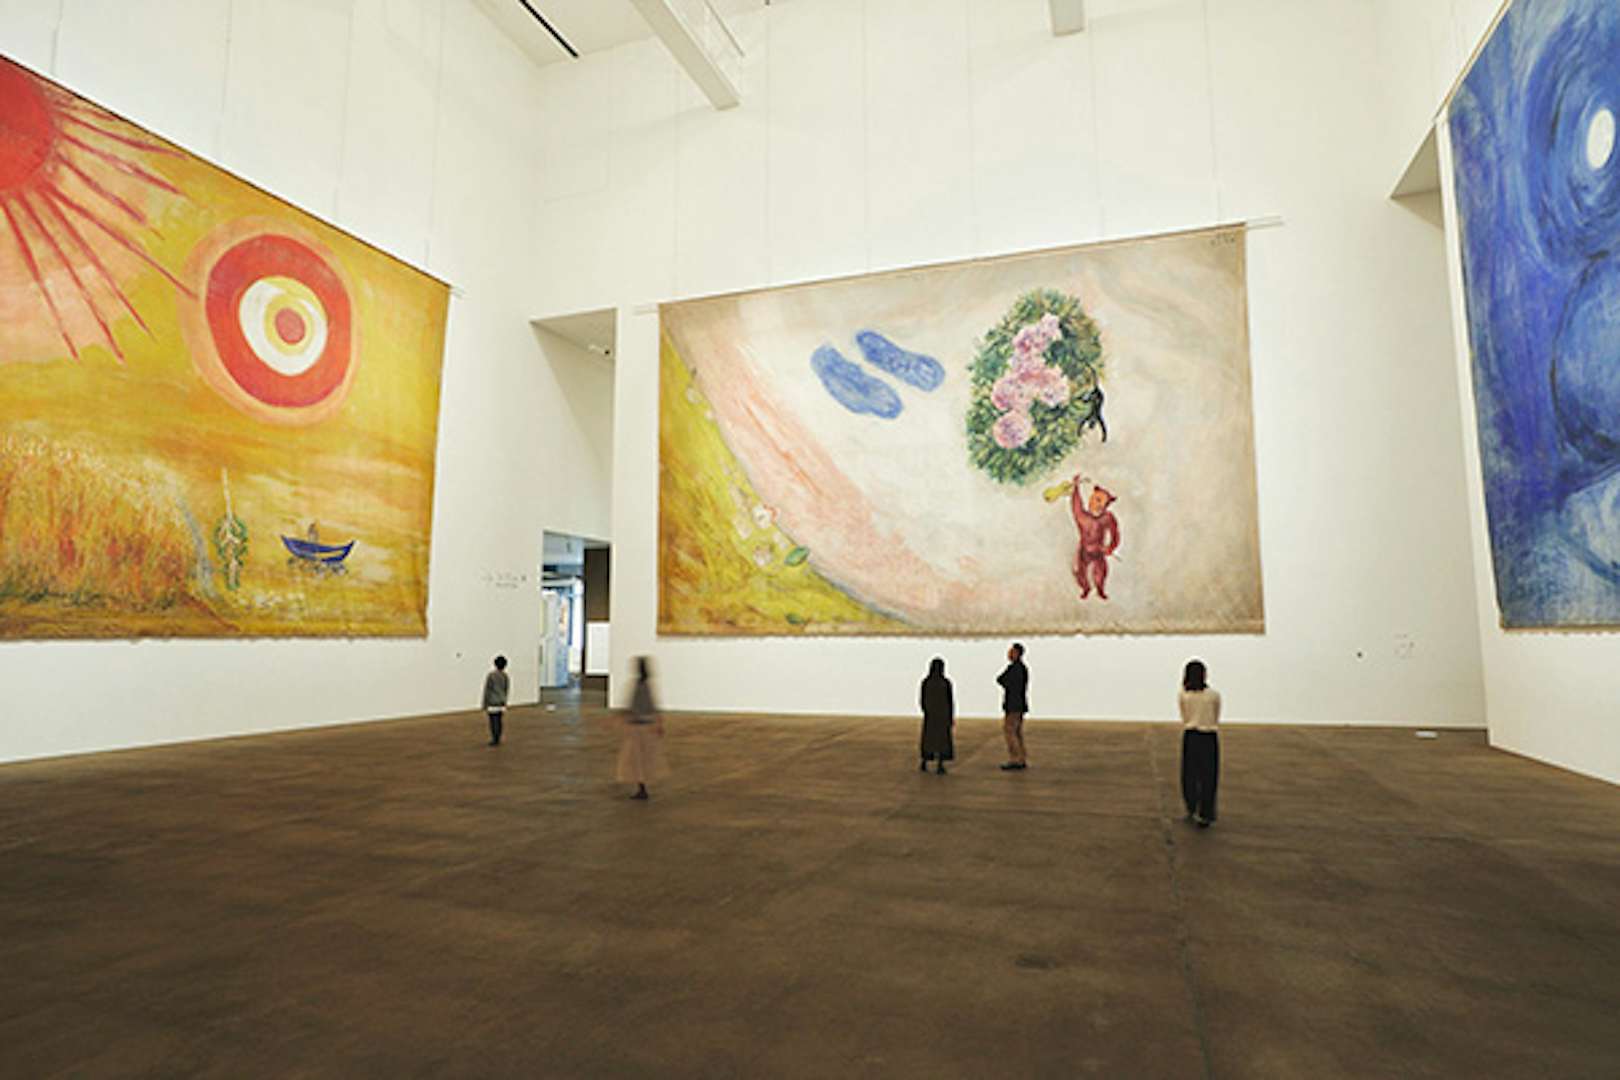 シャガール作品の知られざる 奥行き に迫る 巨大背景画4作品も同時公開 美術手帖